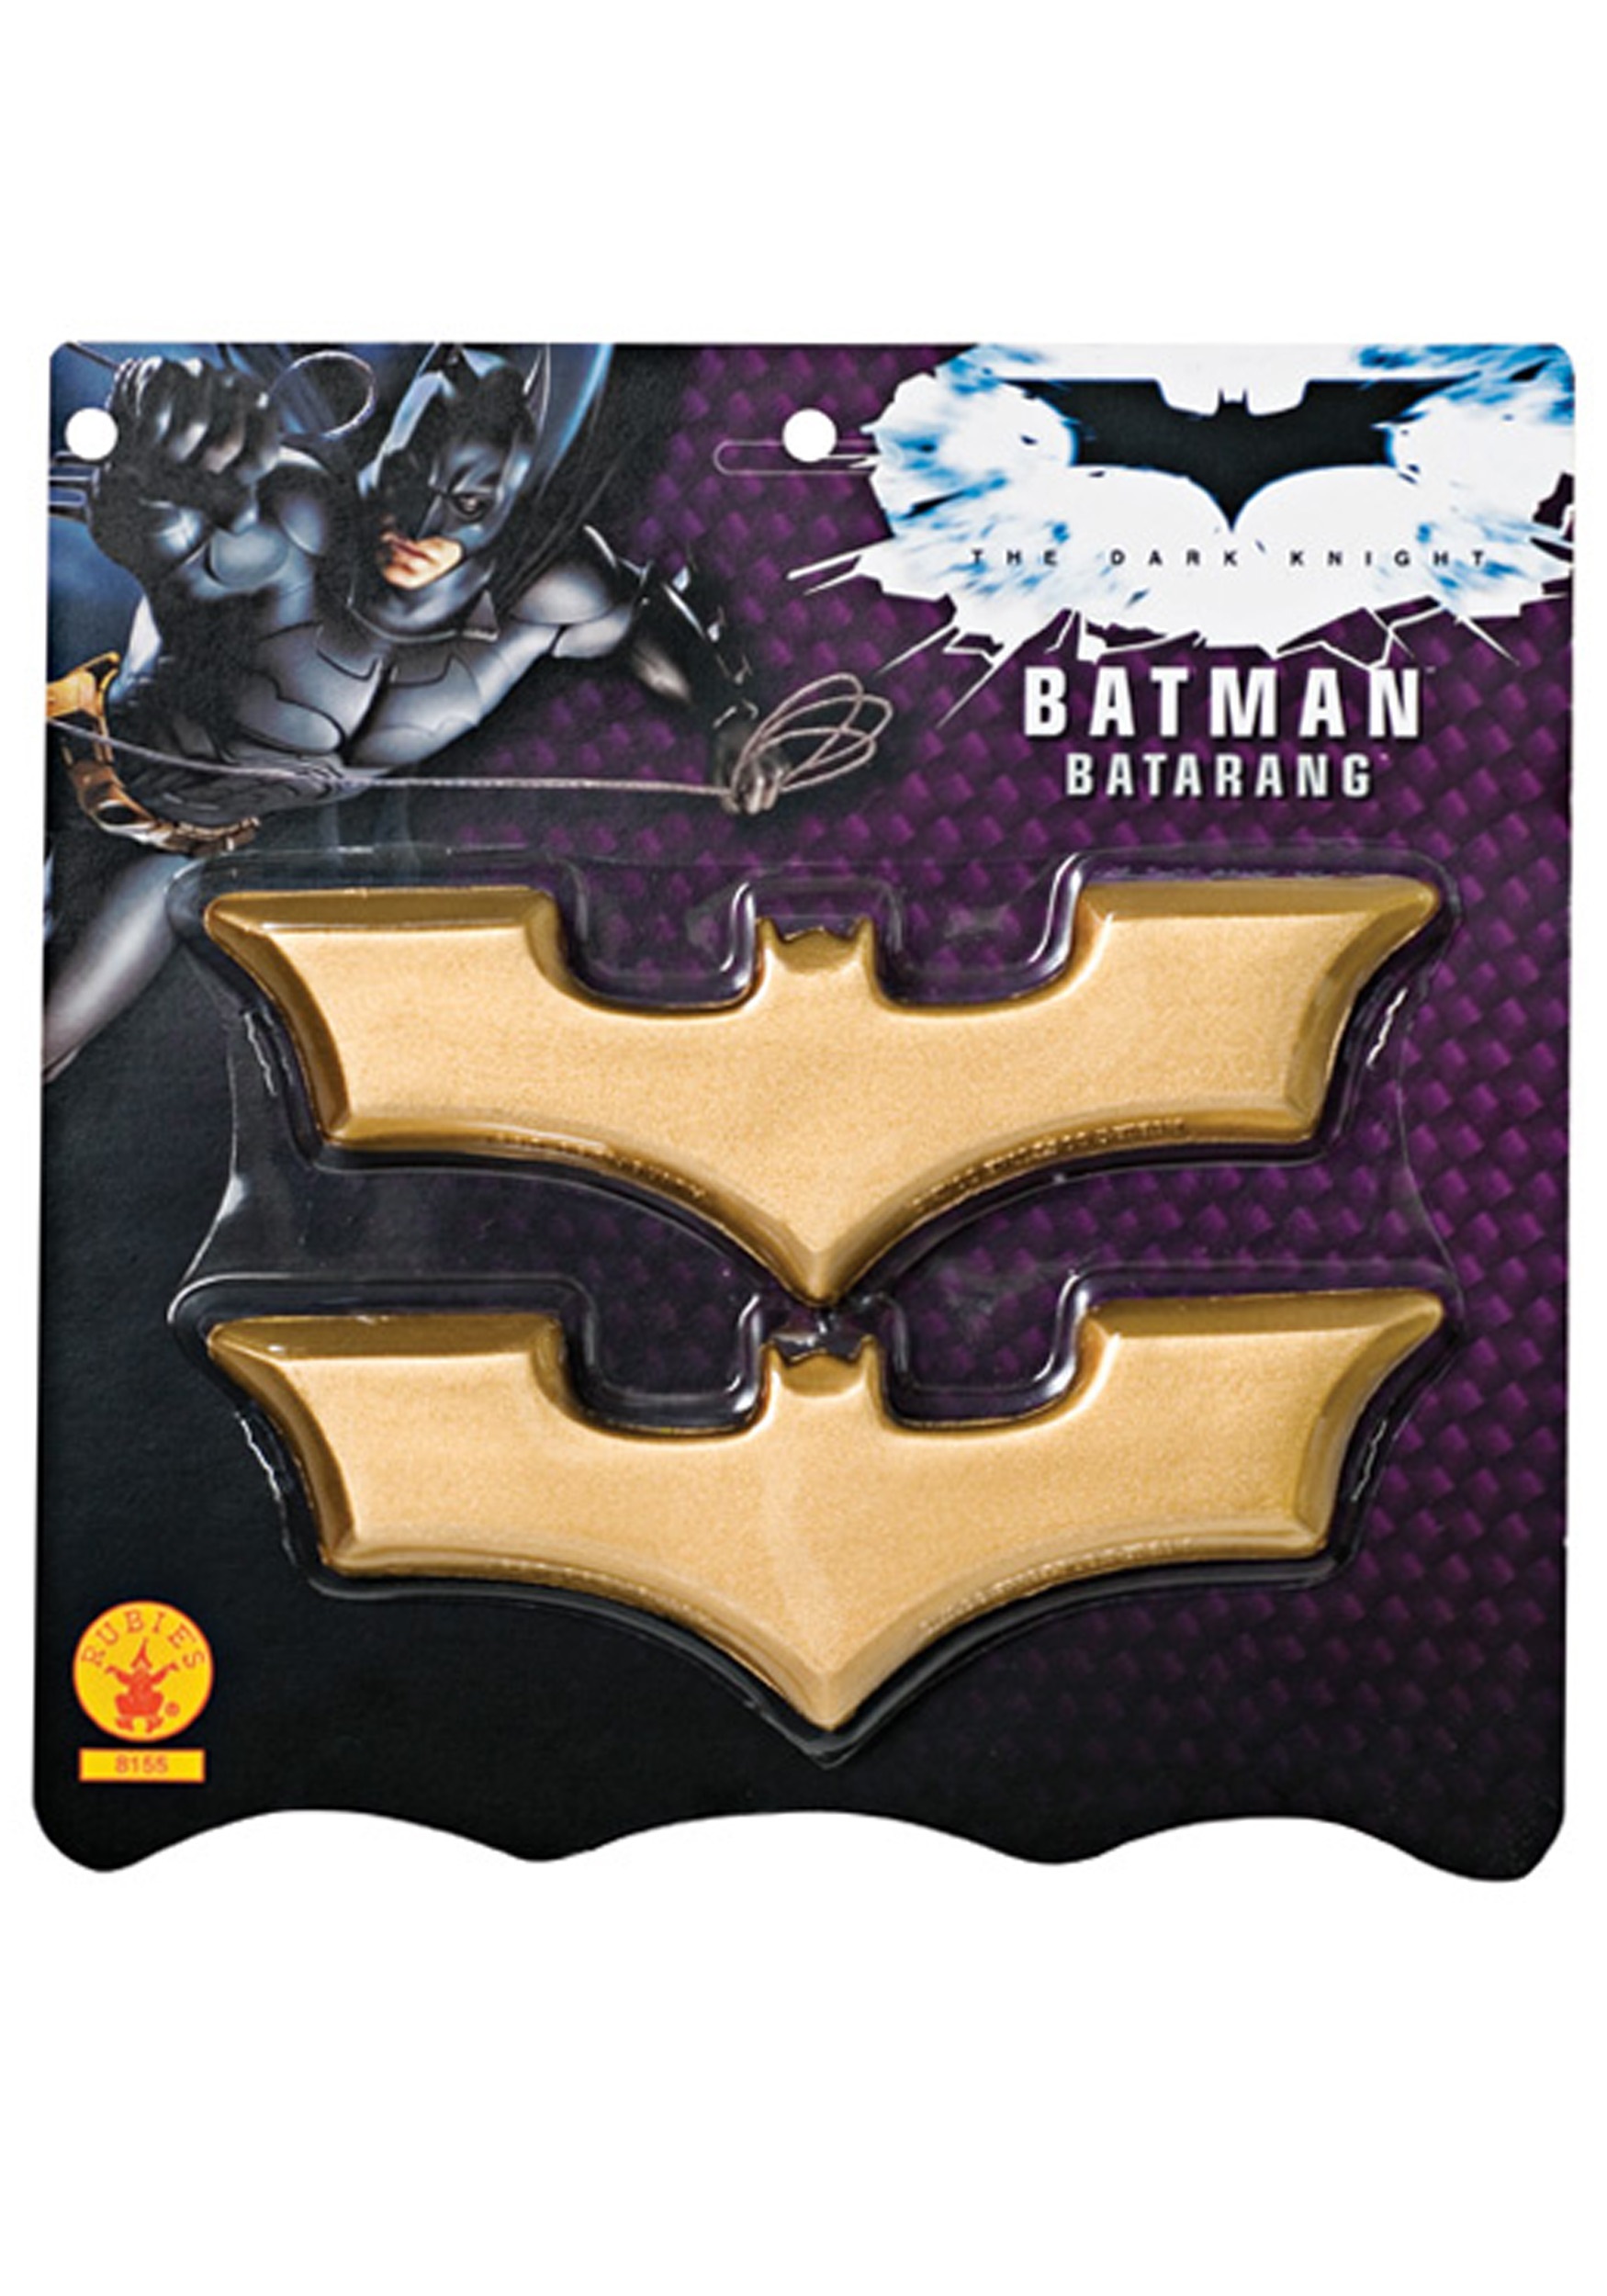 batman belt toy